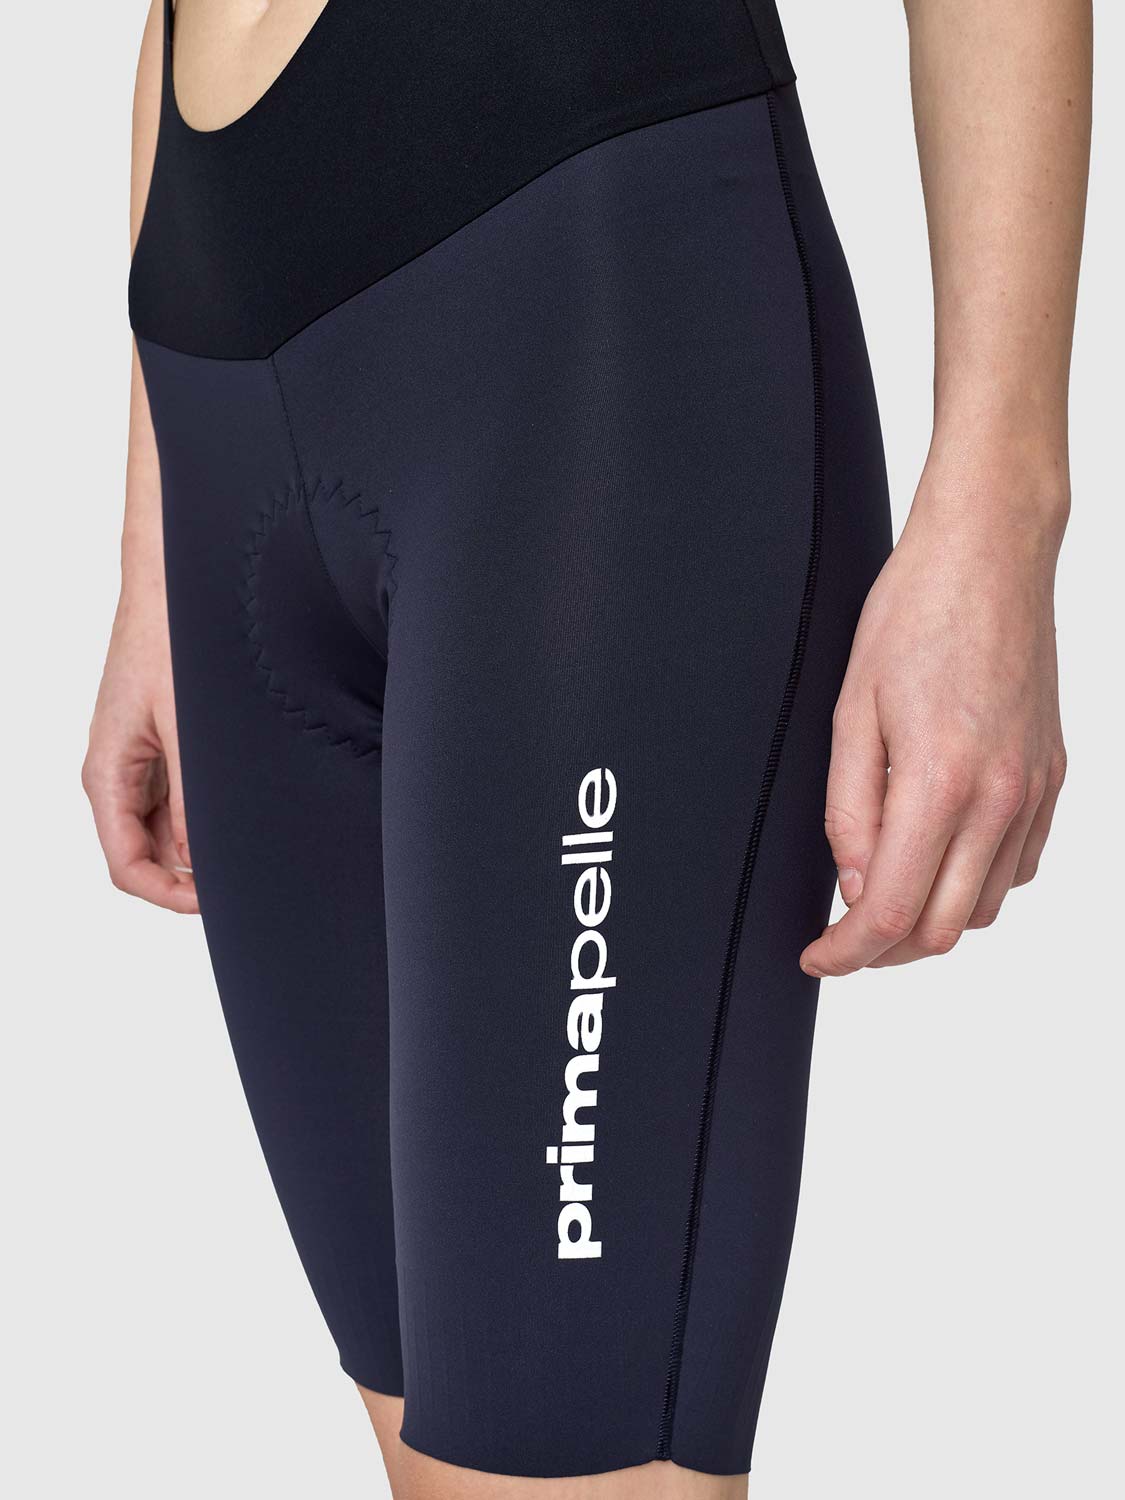 Women's Primapelle Winter Bib Shorts